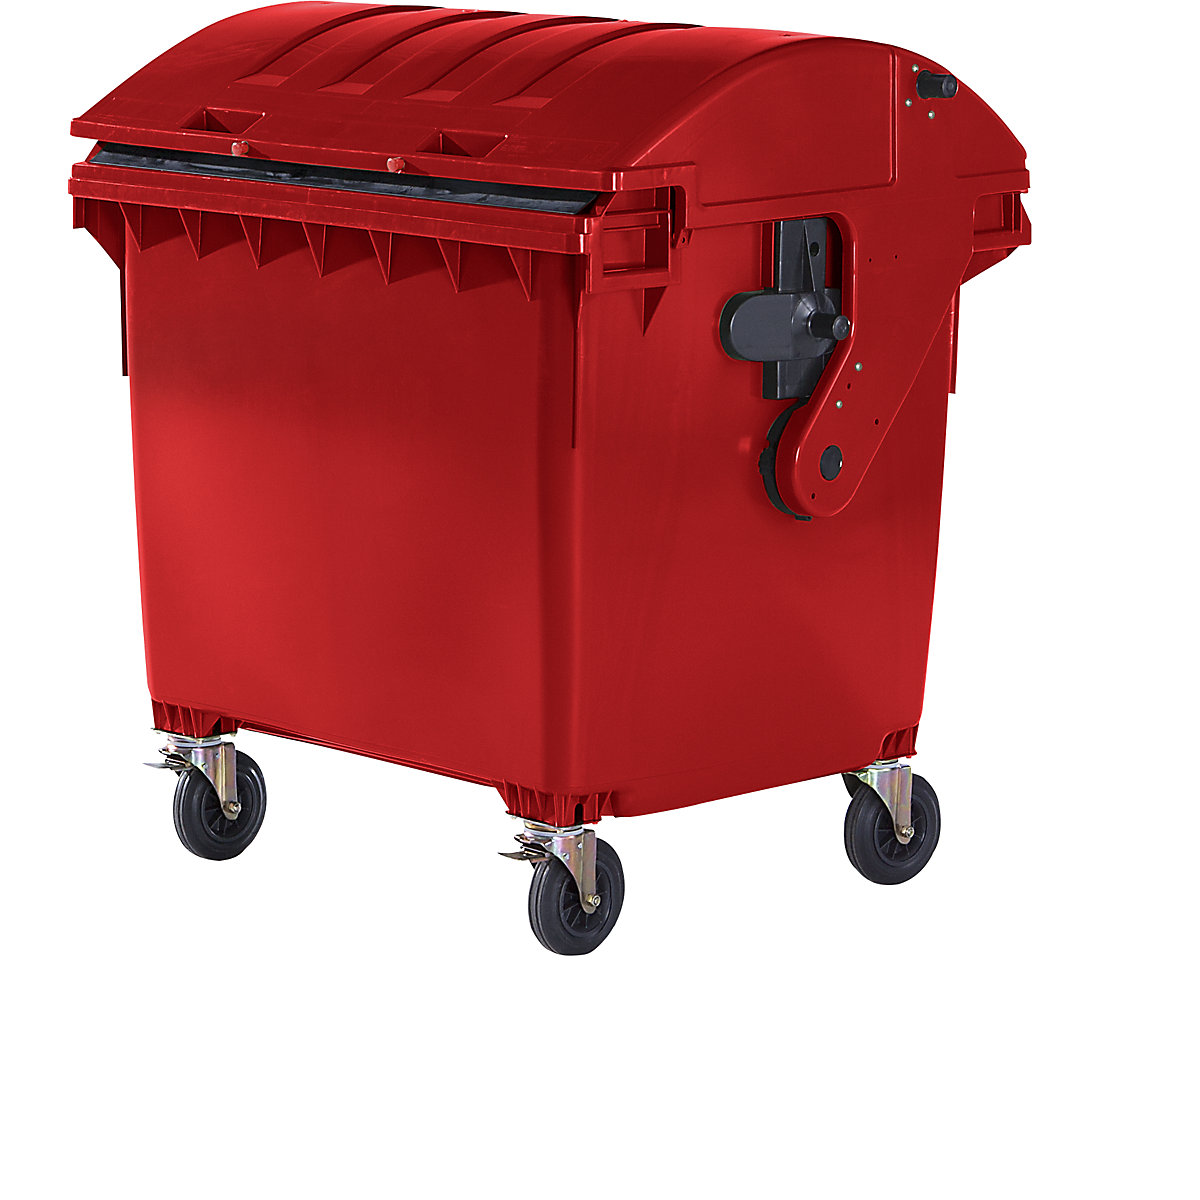 Pojemnik na odpady, z tworzywa, DIN EN 840, poj. 1100 l, wys. x szer. x głęb. 1360 x 1465 x 1100 mm, pokrywa przesuwana, zabezpieczenie przed dostępem dzieci, czerwony, dostawa od 5 szt.-4